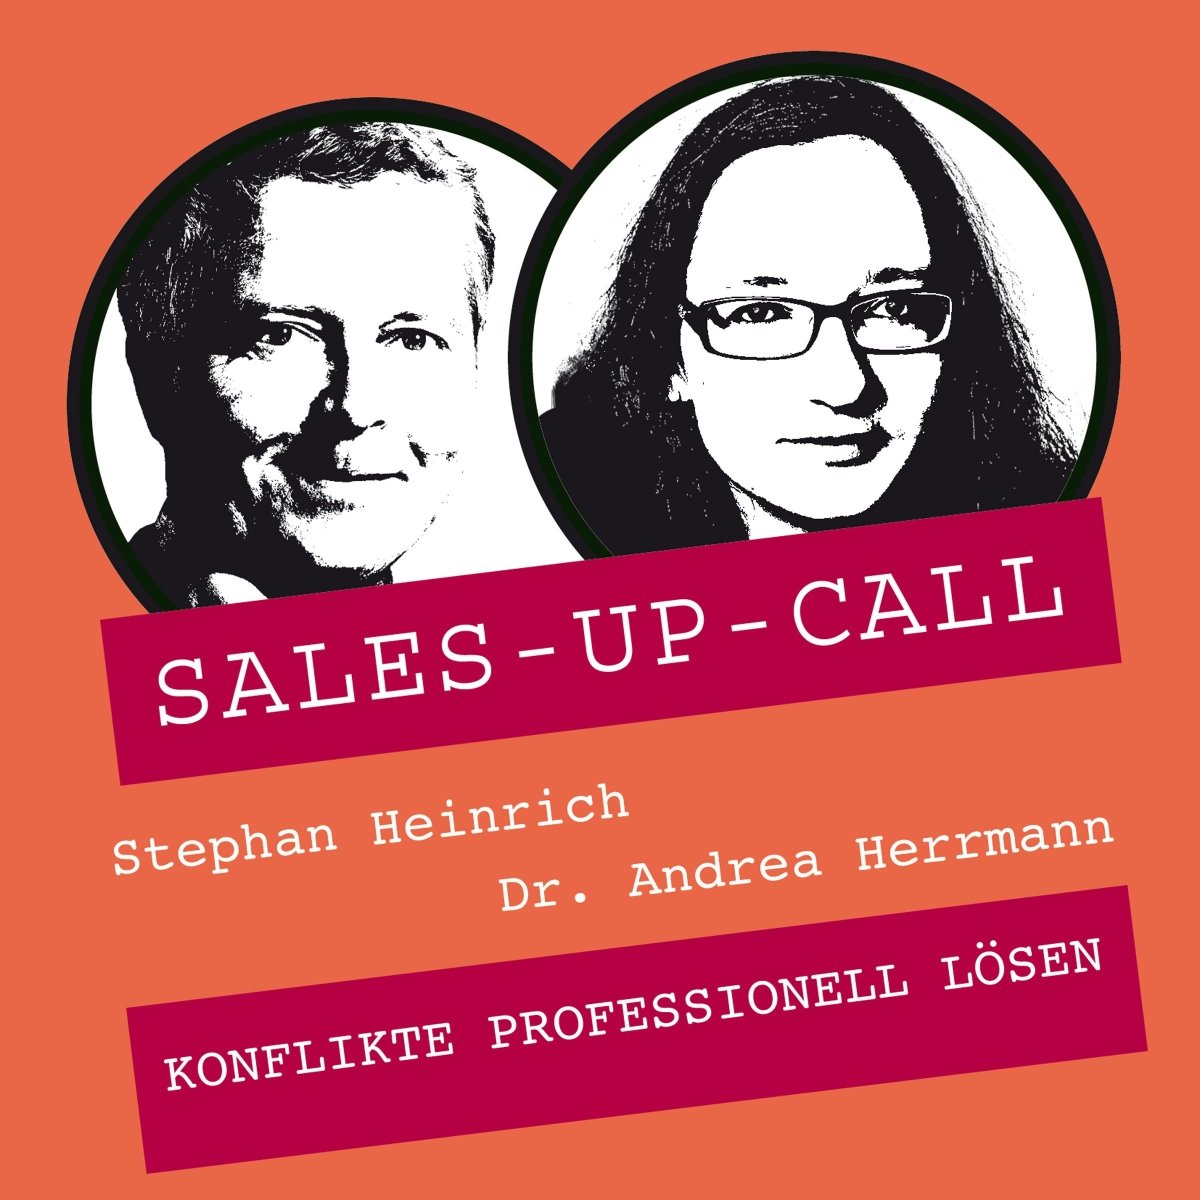 Konflikte professionell lösen - Sales-up-Call - Stephan Heinrich